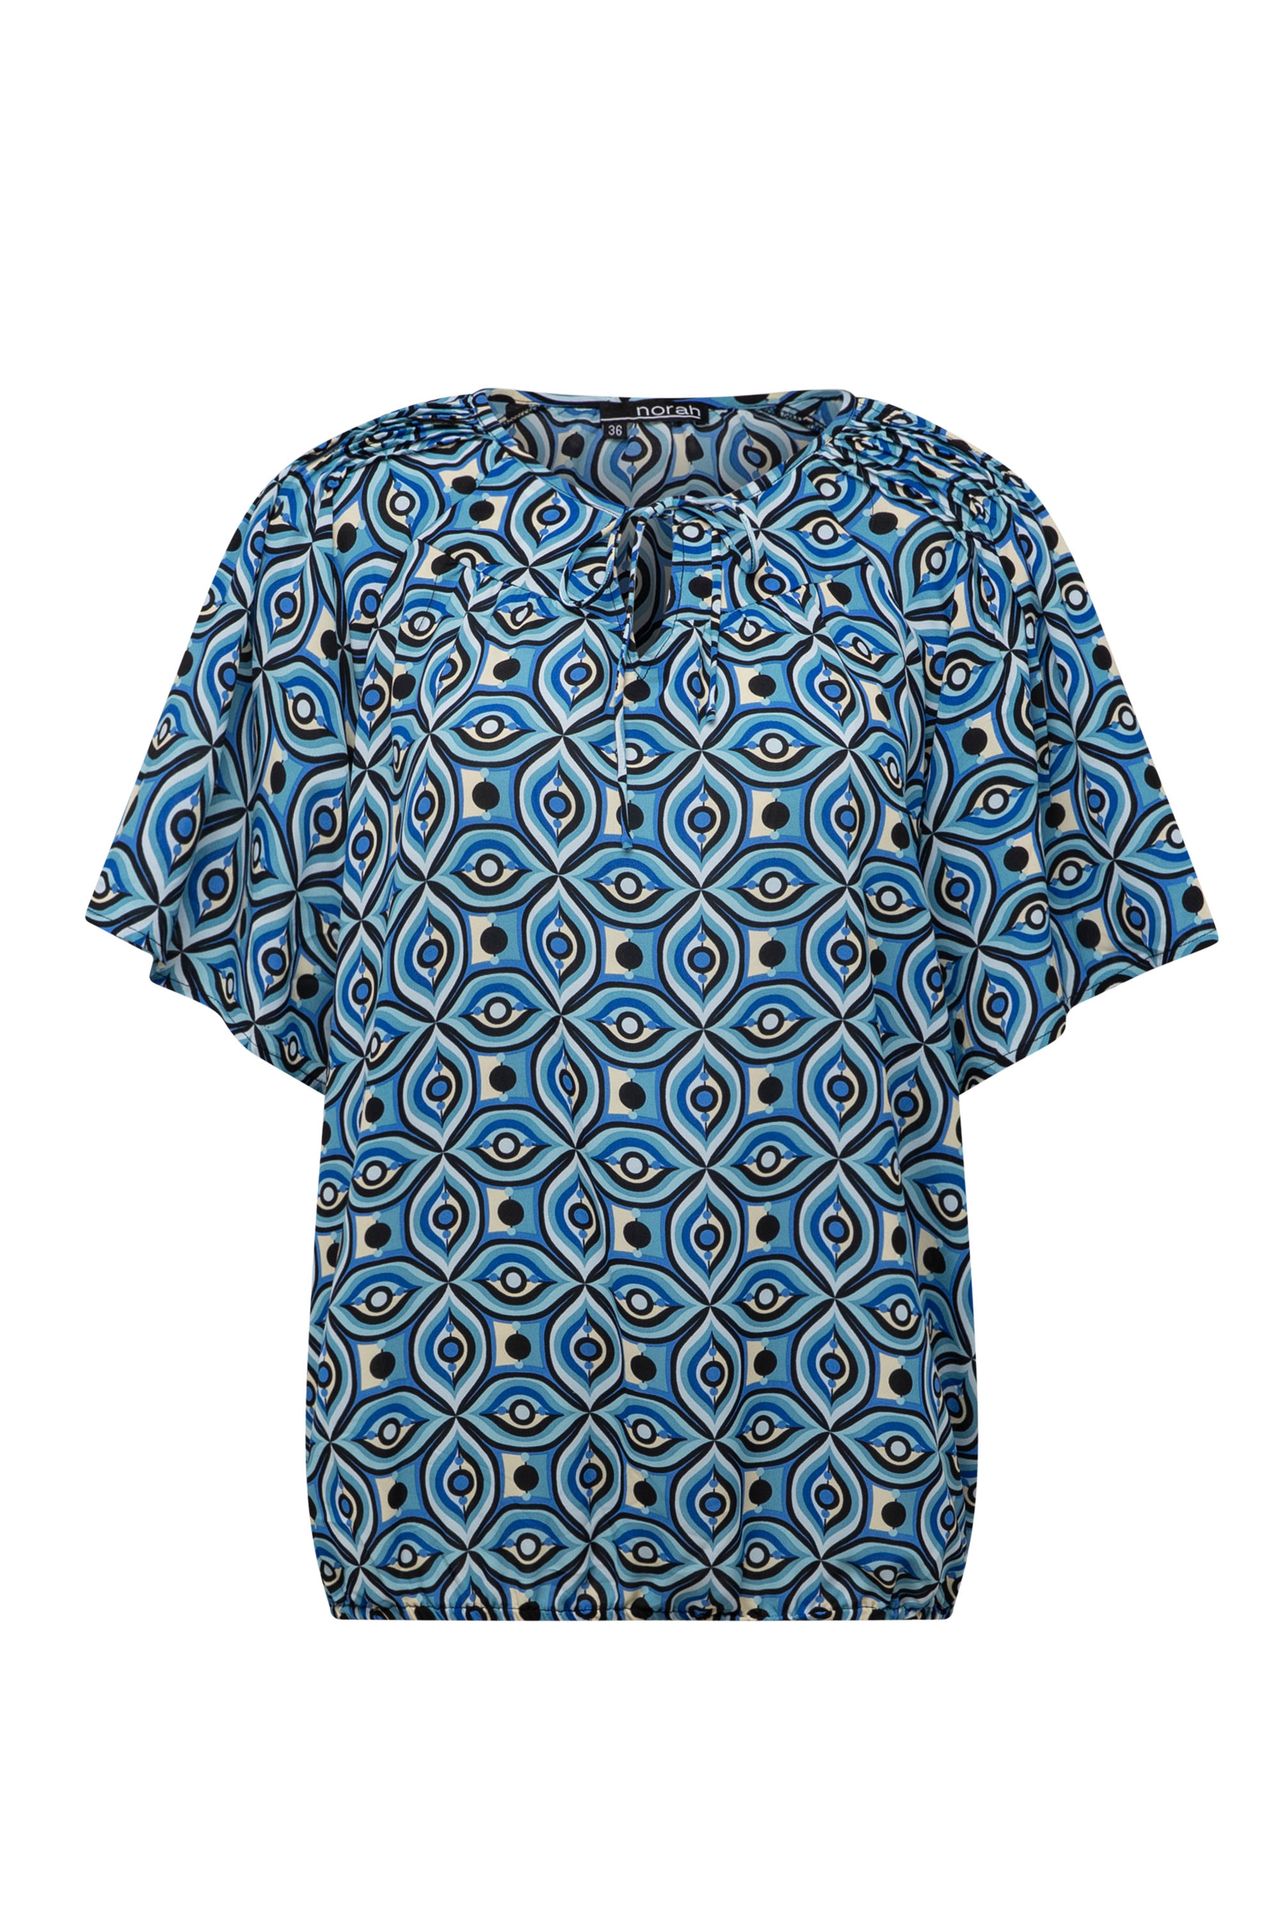 Norah Blauwe blouse met print blue multicolor 213545-420